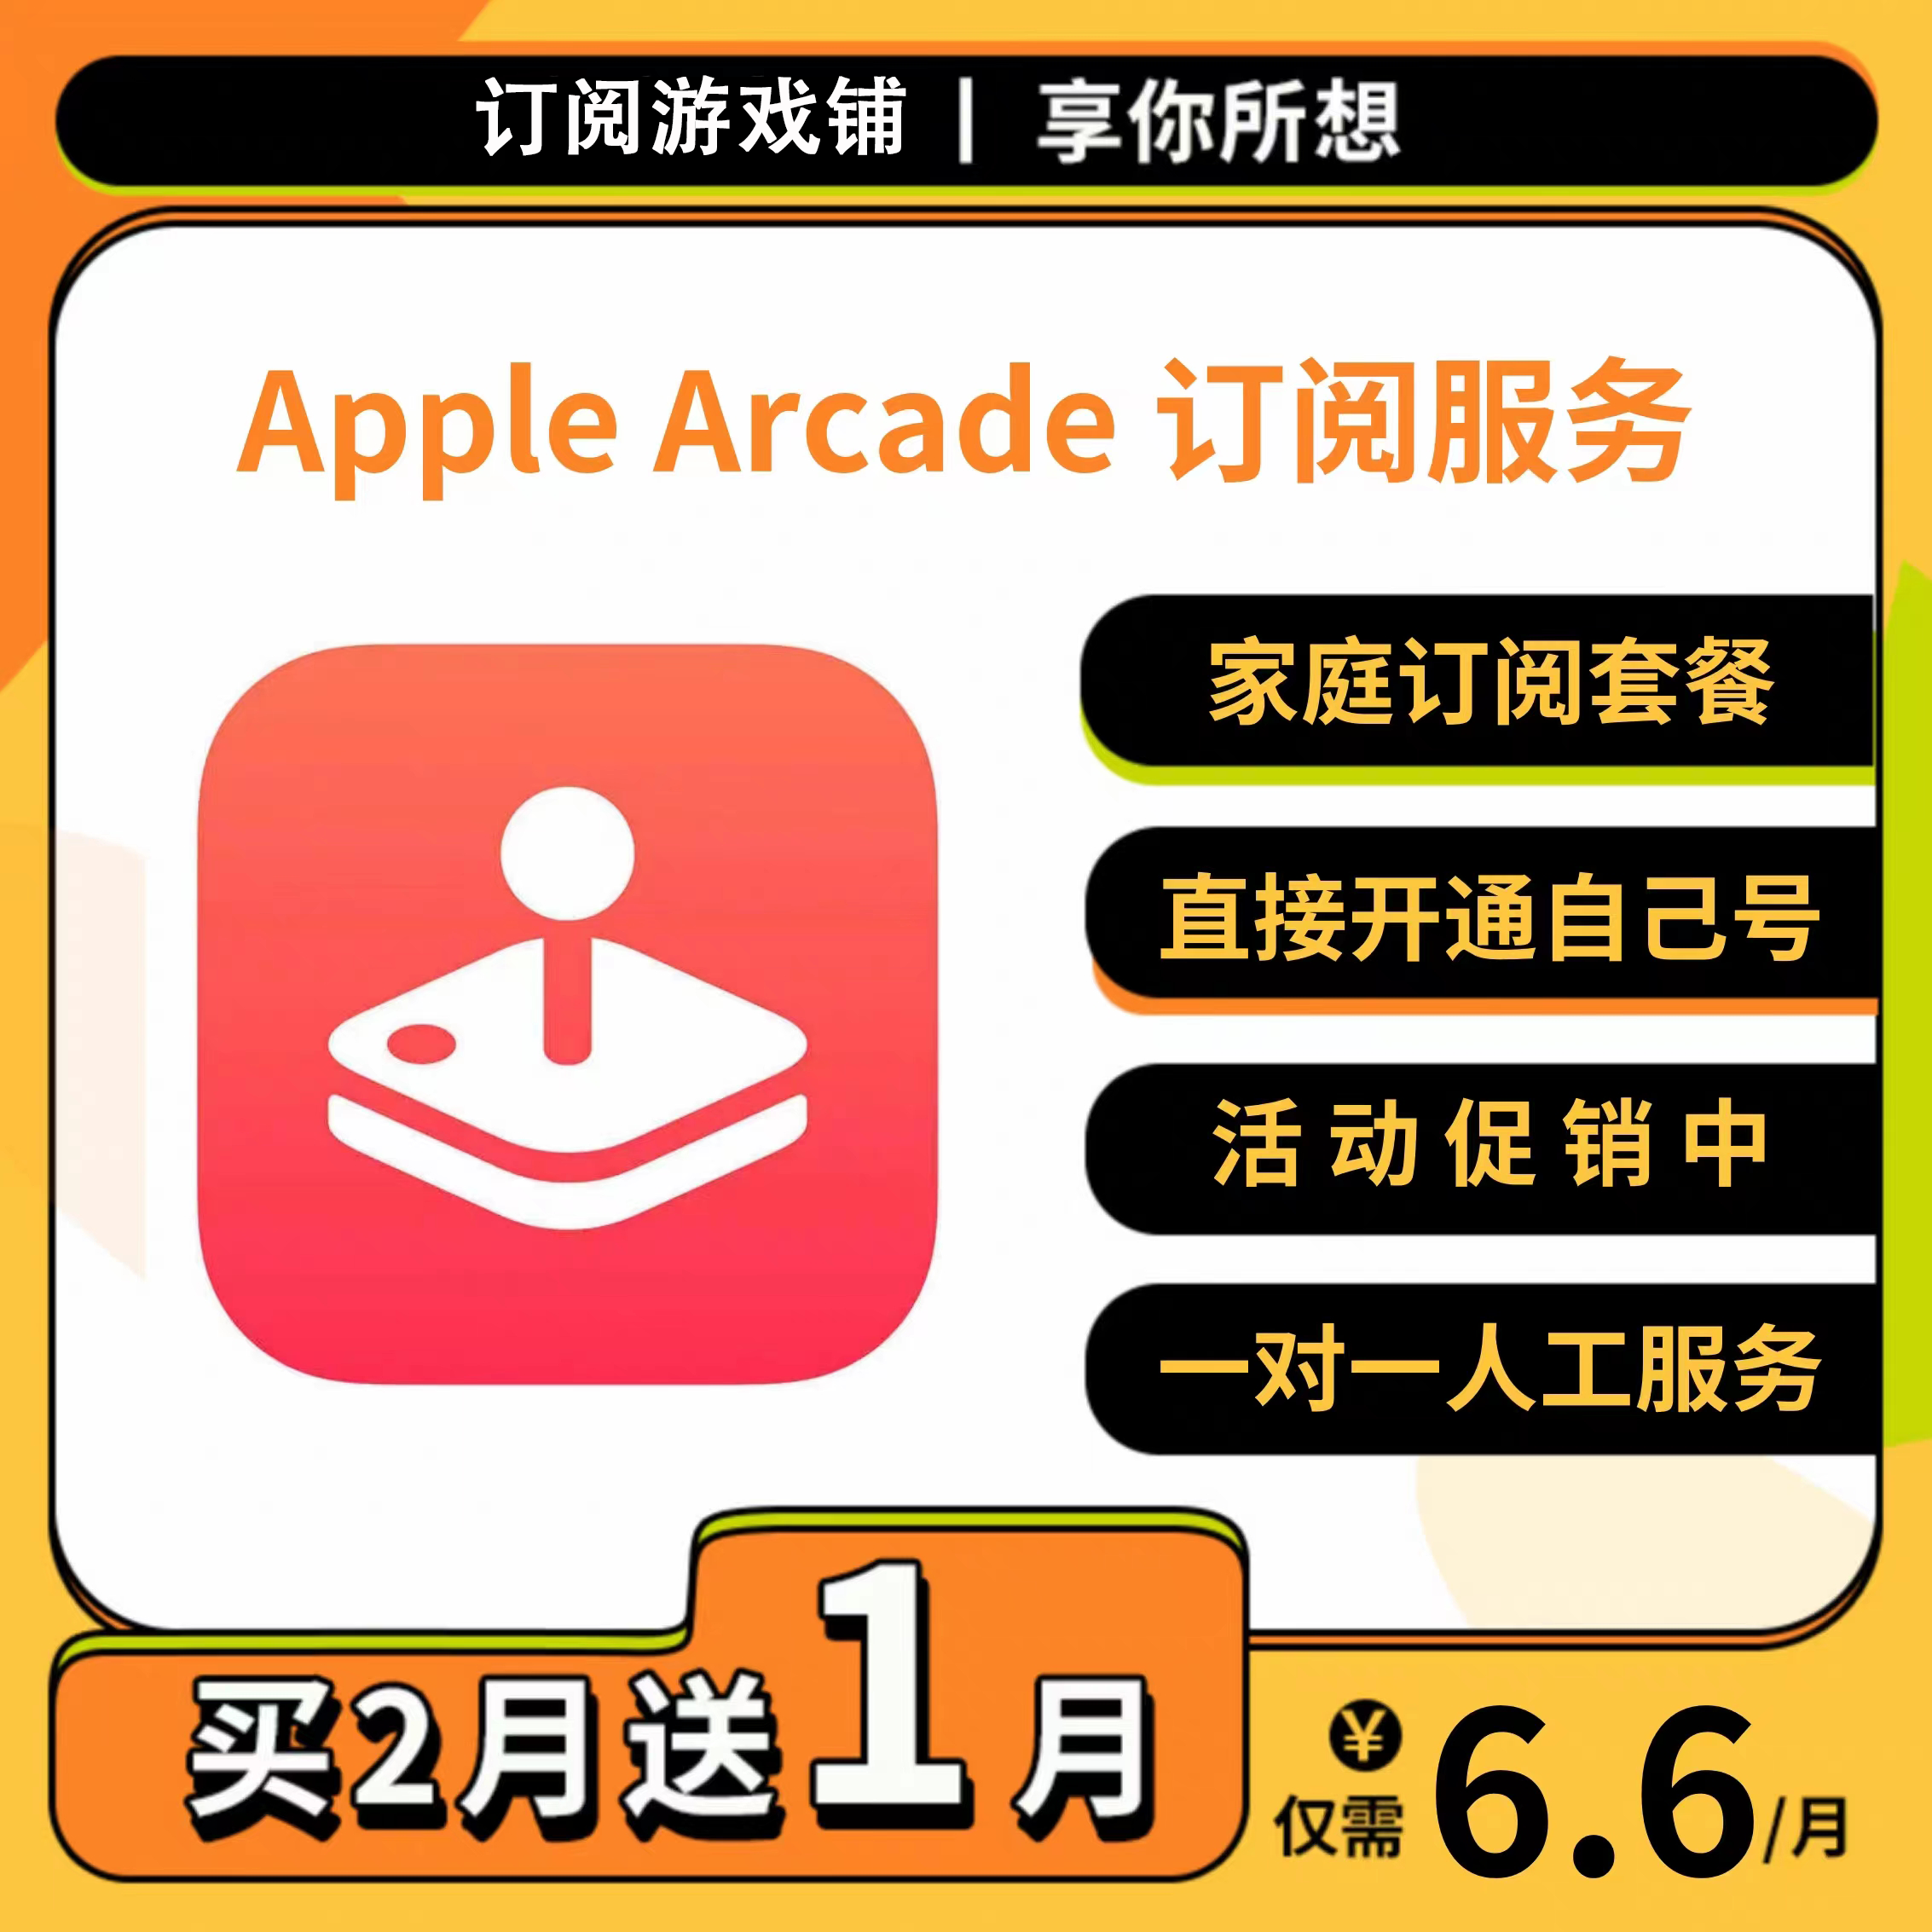 Arcade订阅服务家庭套餐苹果美服务开通自己号 NBA2k23捣蛋大脚怪